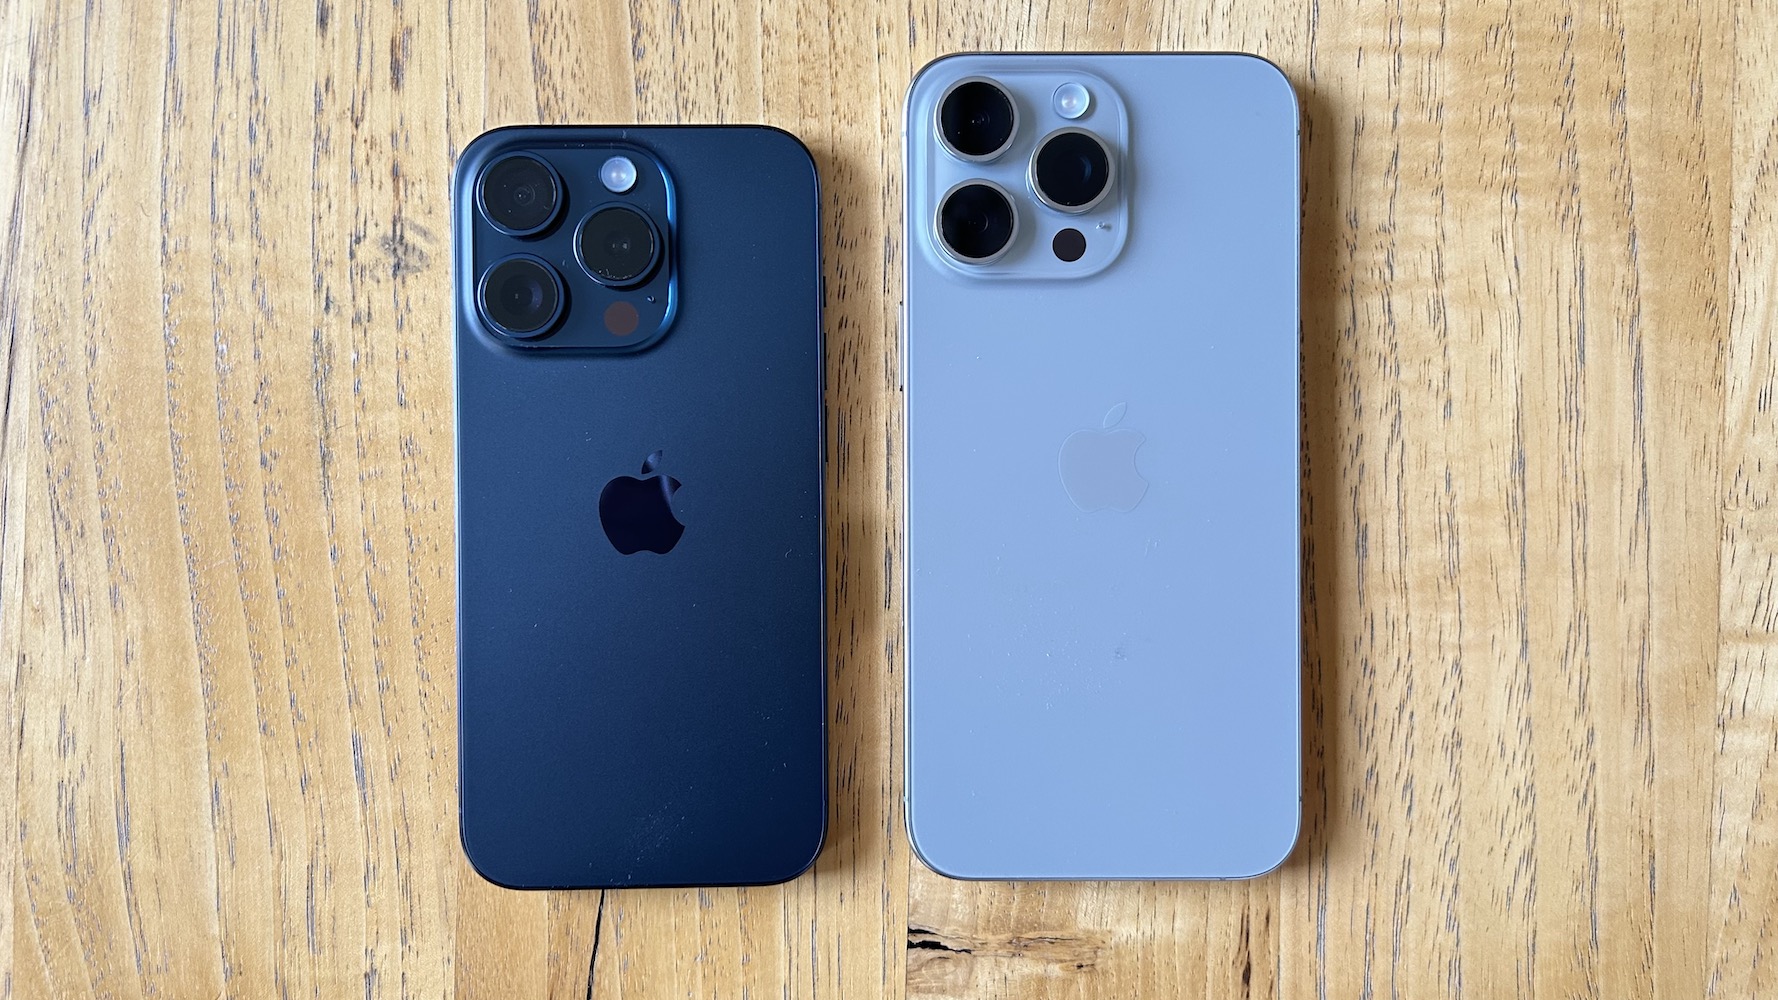 Cómo será el iPhone 15: colores, modelo Pro Max, tamaño y batería